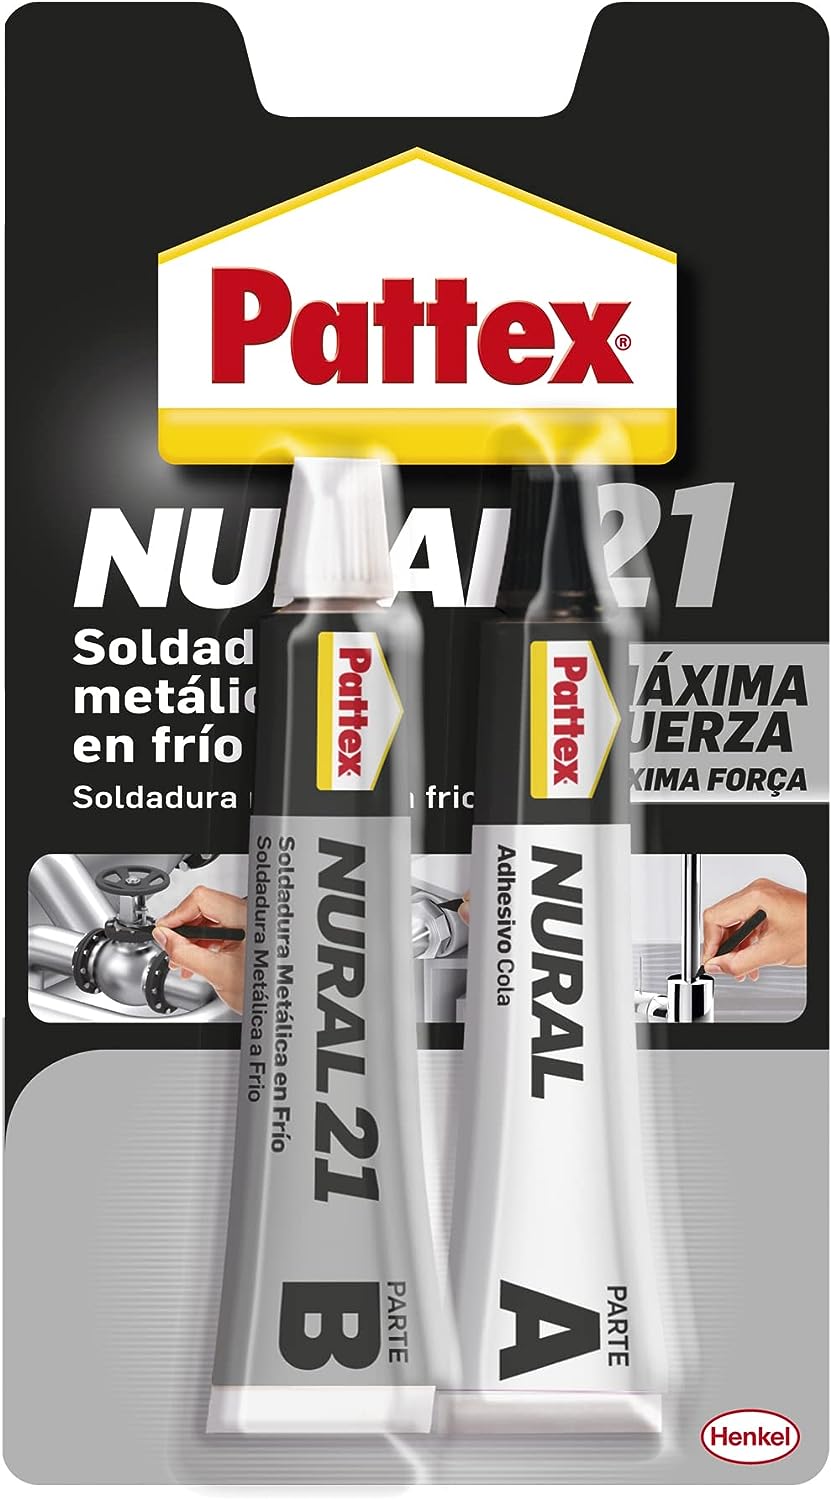 TUBO PATTEX NURAL 27 MEDIO 22 ML - TUBO PATEX-NURAL